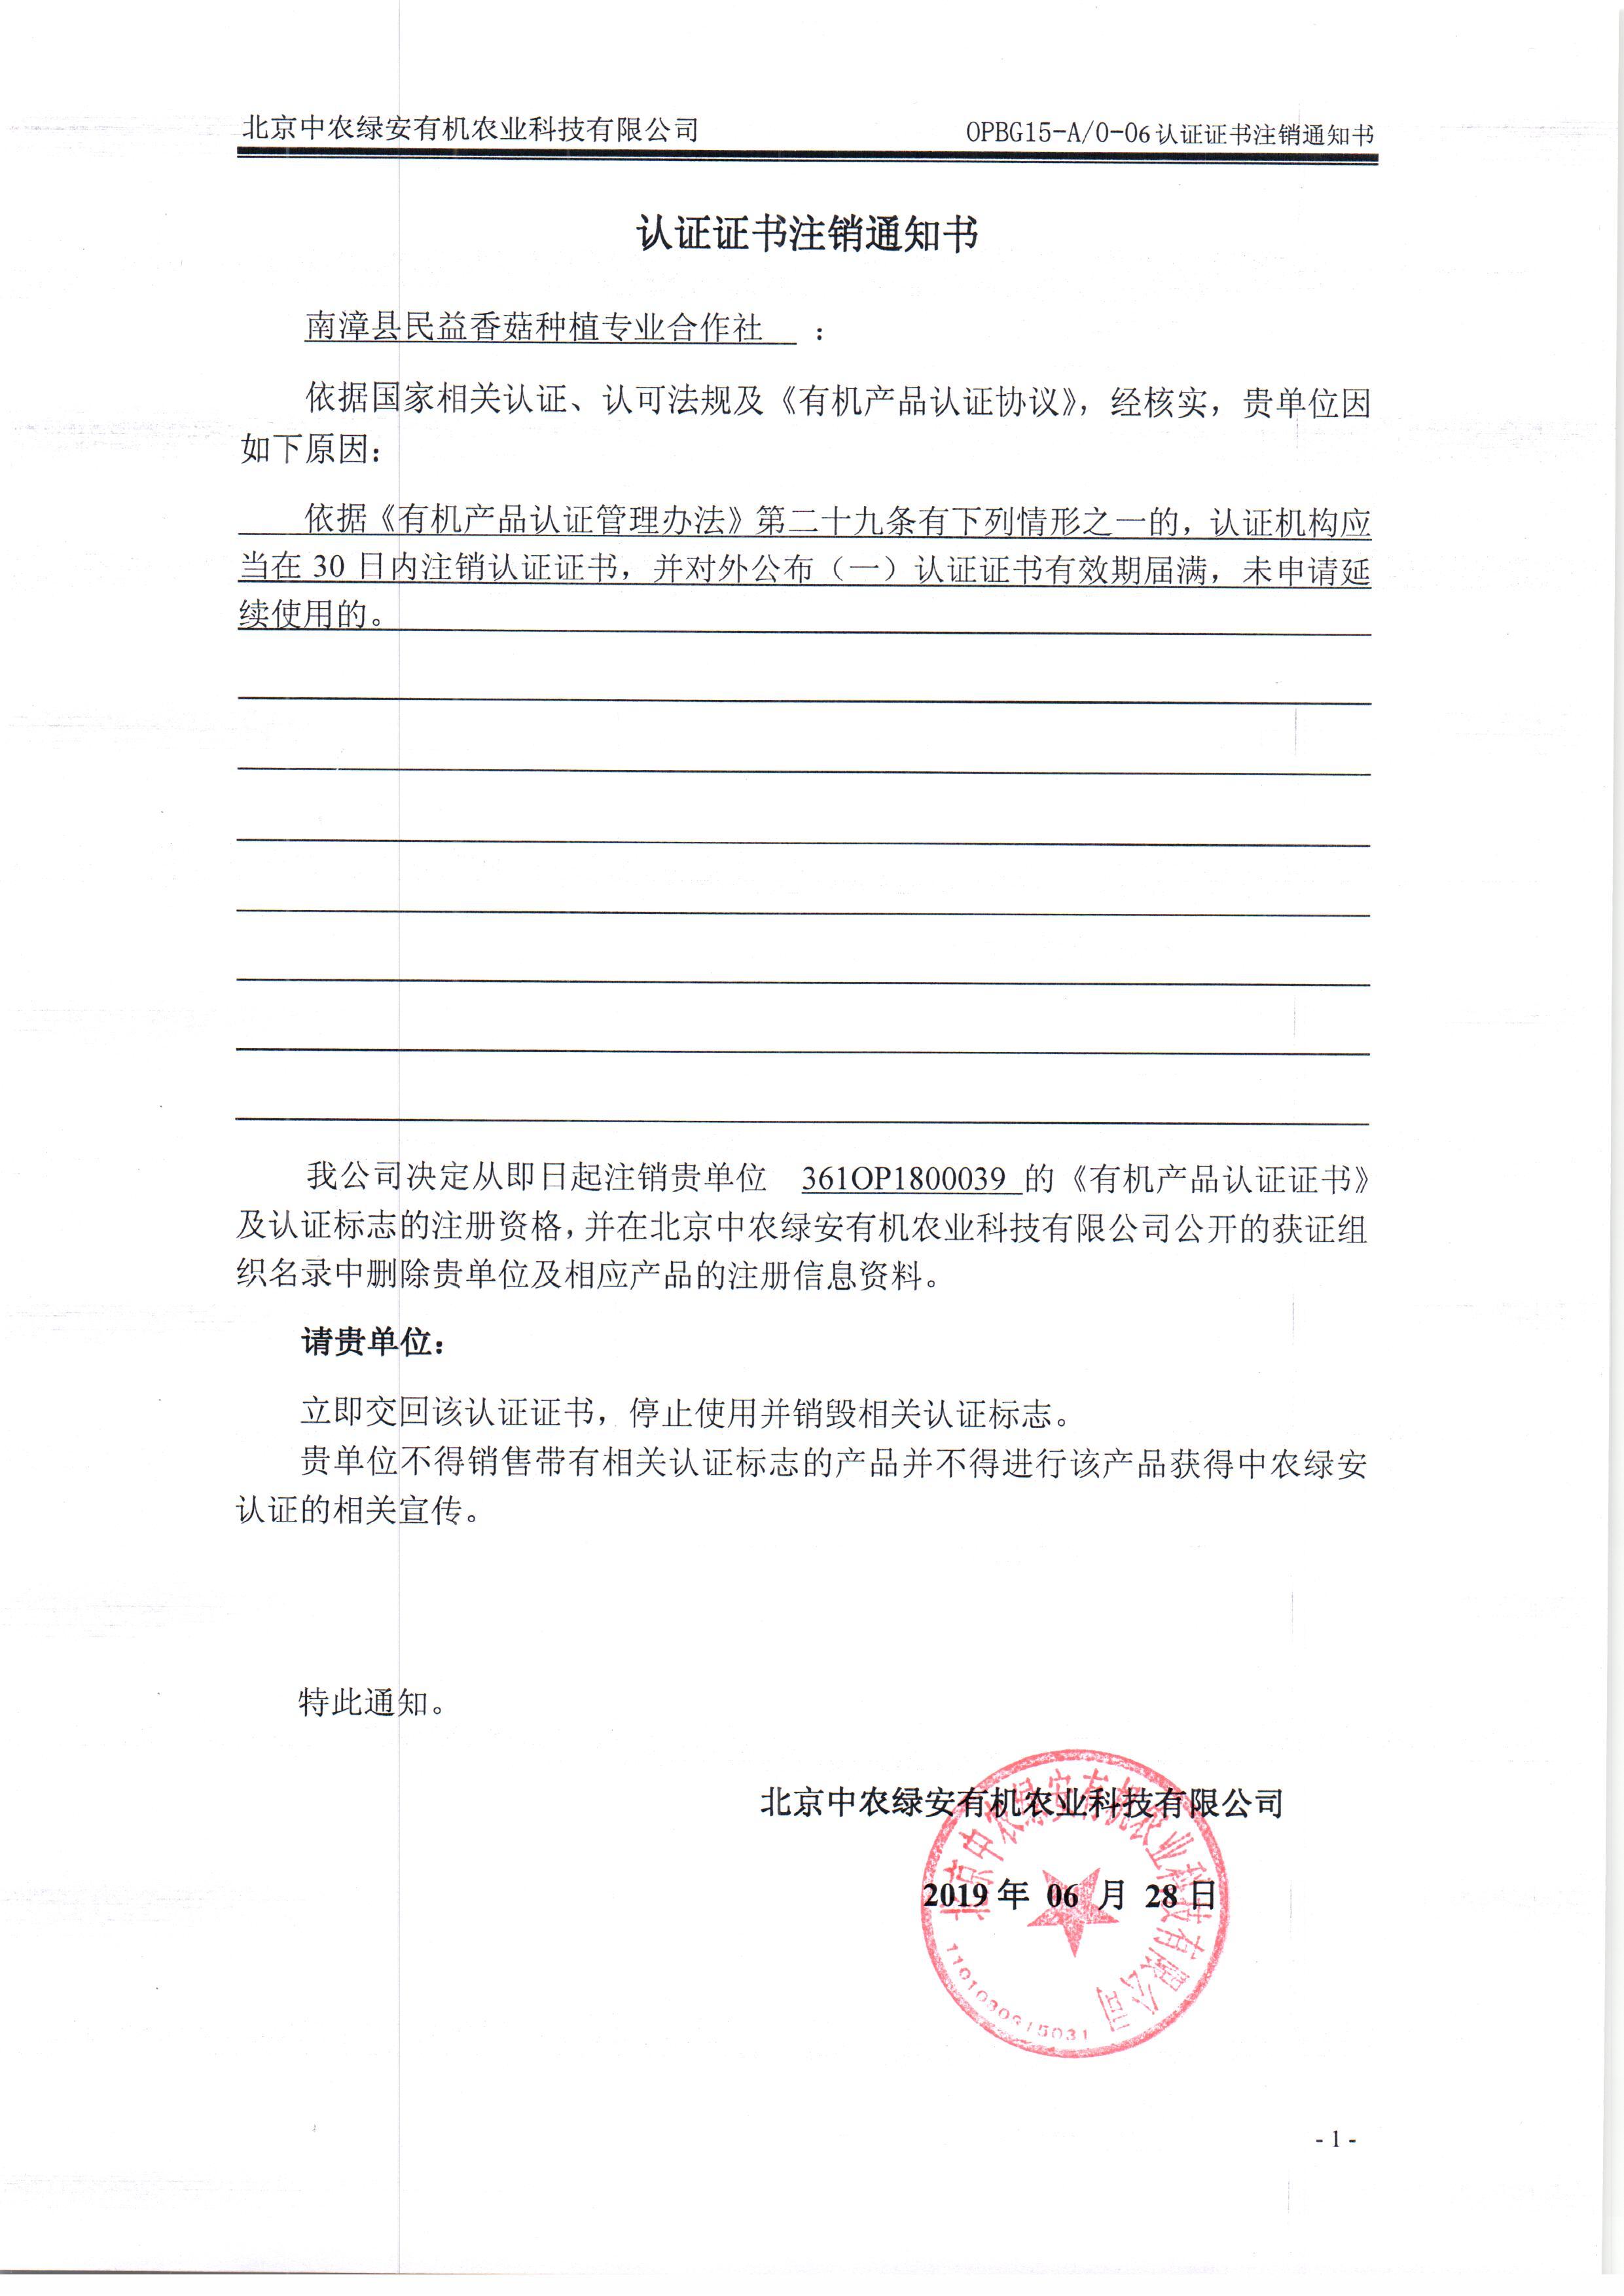 南漳县民益香菇种植专业合作社证书注销通知书